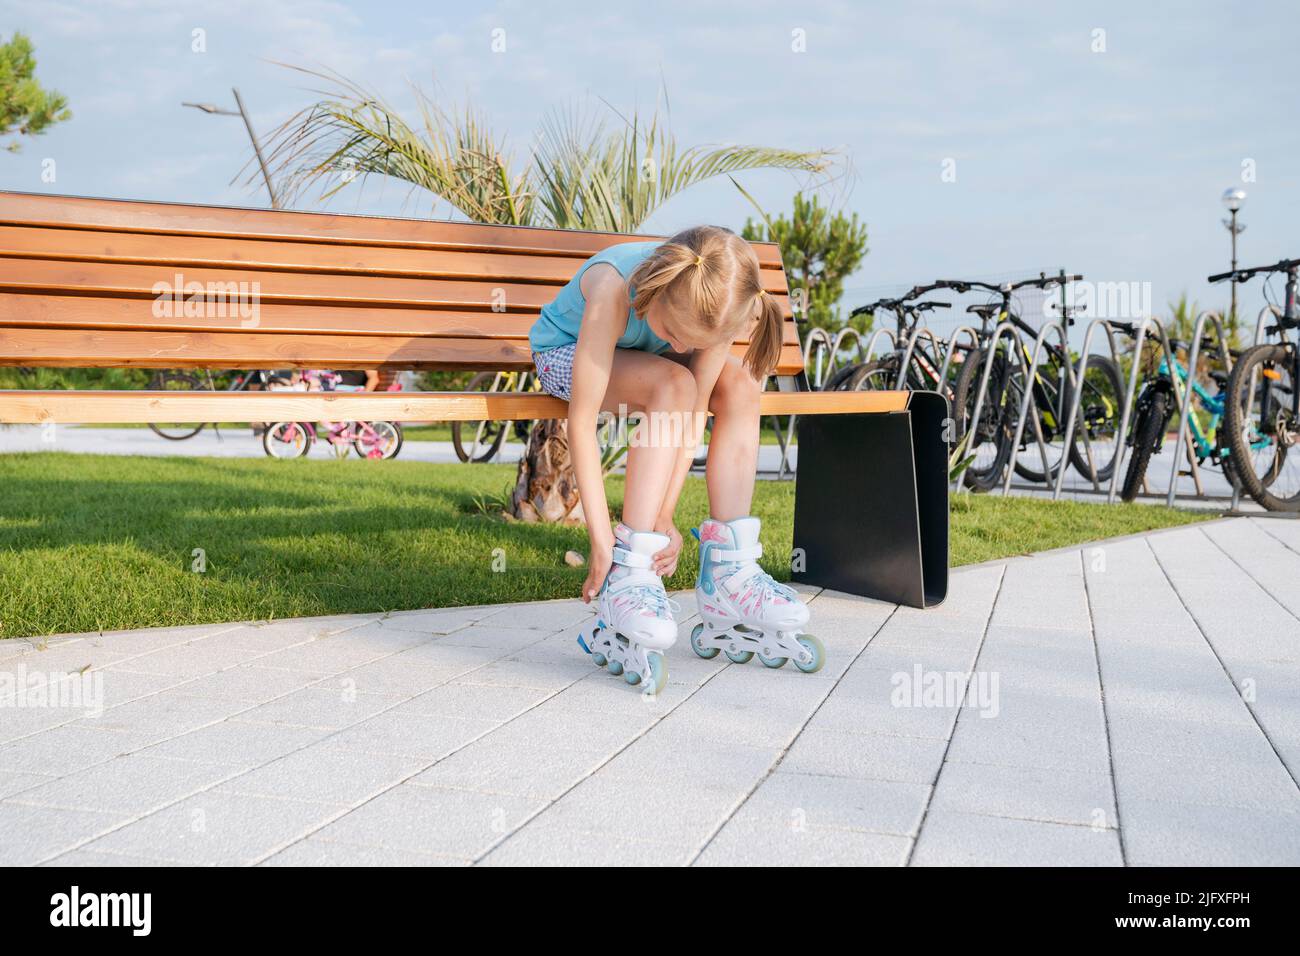 Ein Mädchen in Rollschullaufenwagen befestigt in einem Park auf einer Bank ein Rollschloss. Stockfoto